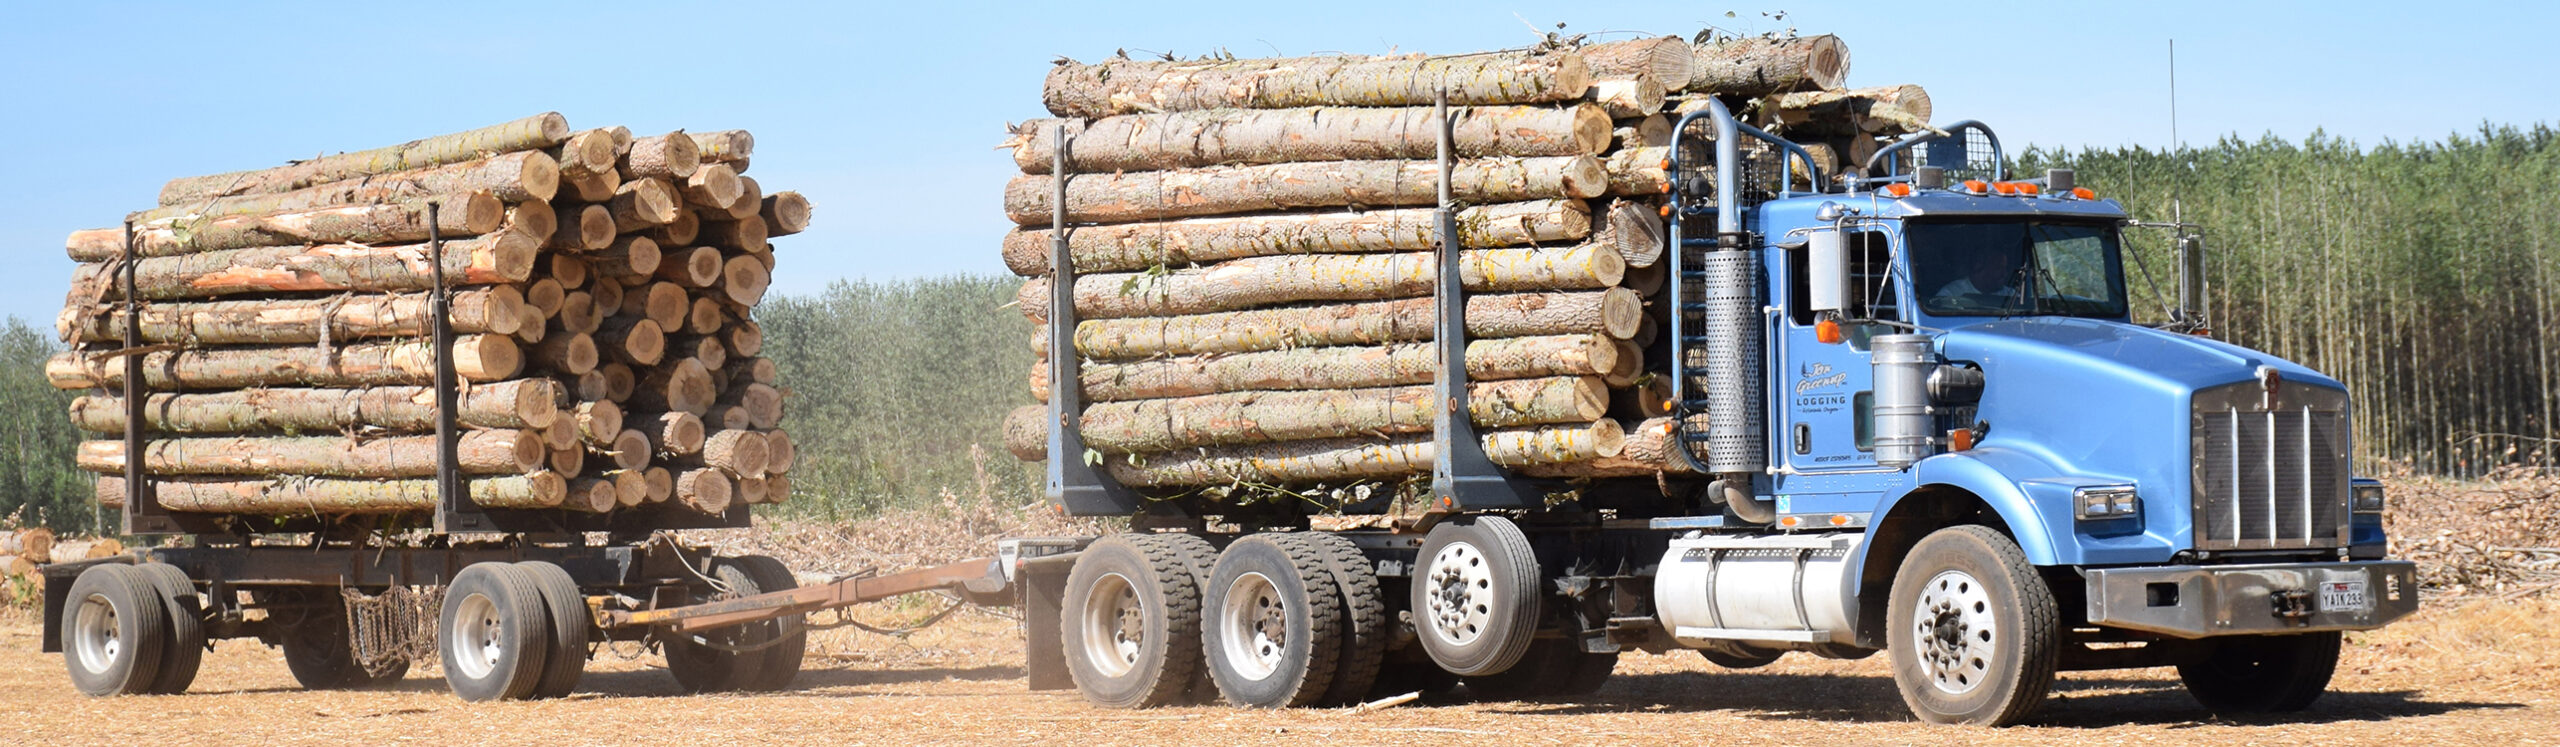 Biocycle Farm Trucked Logs